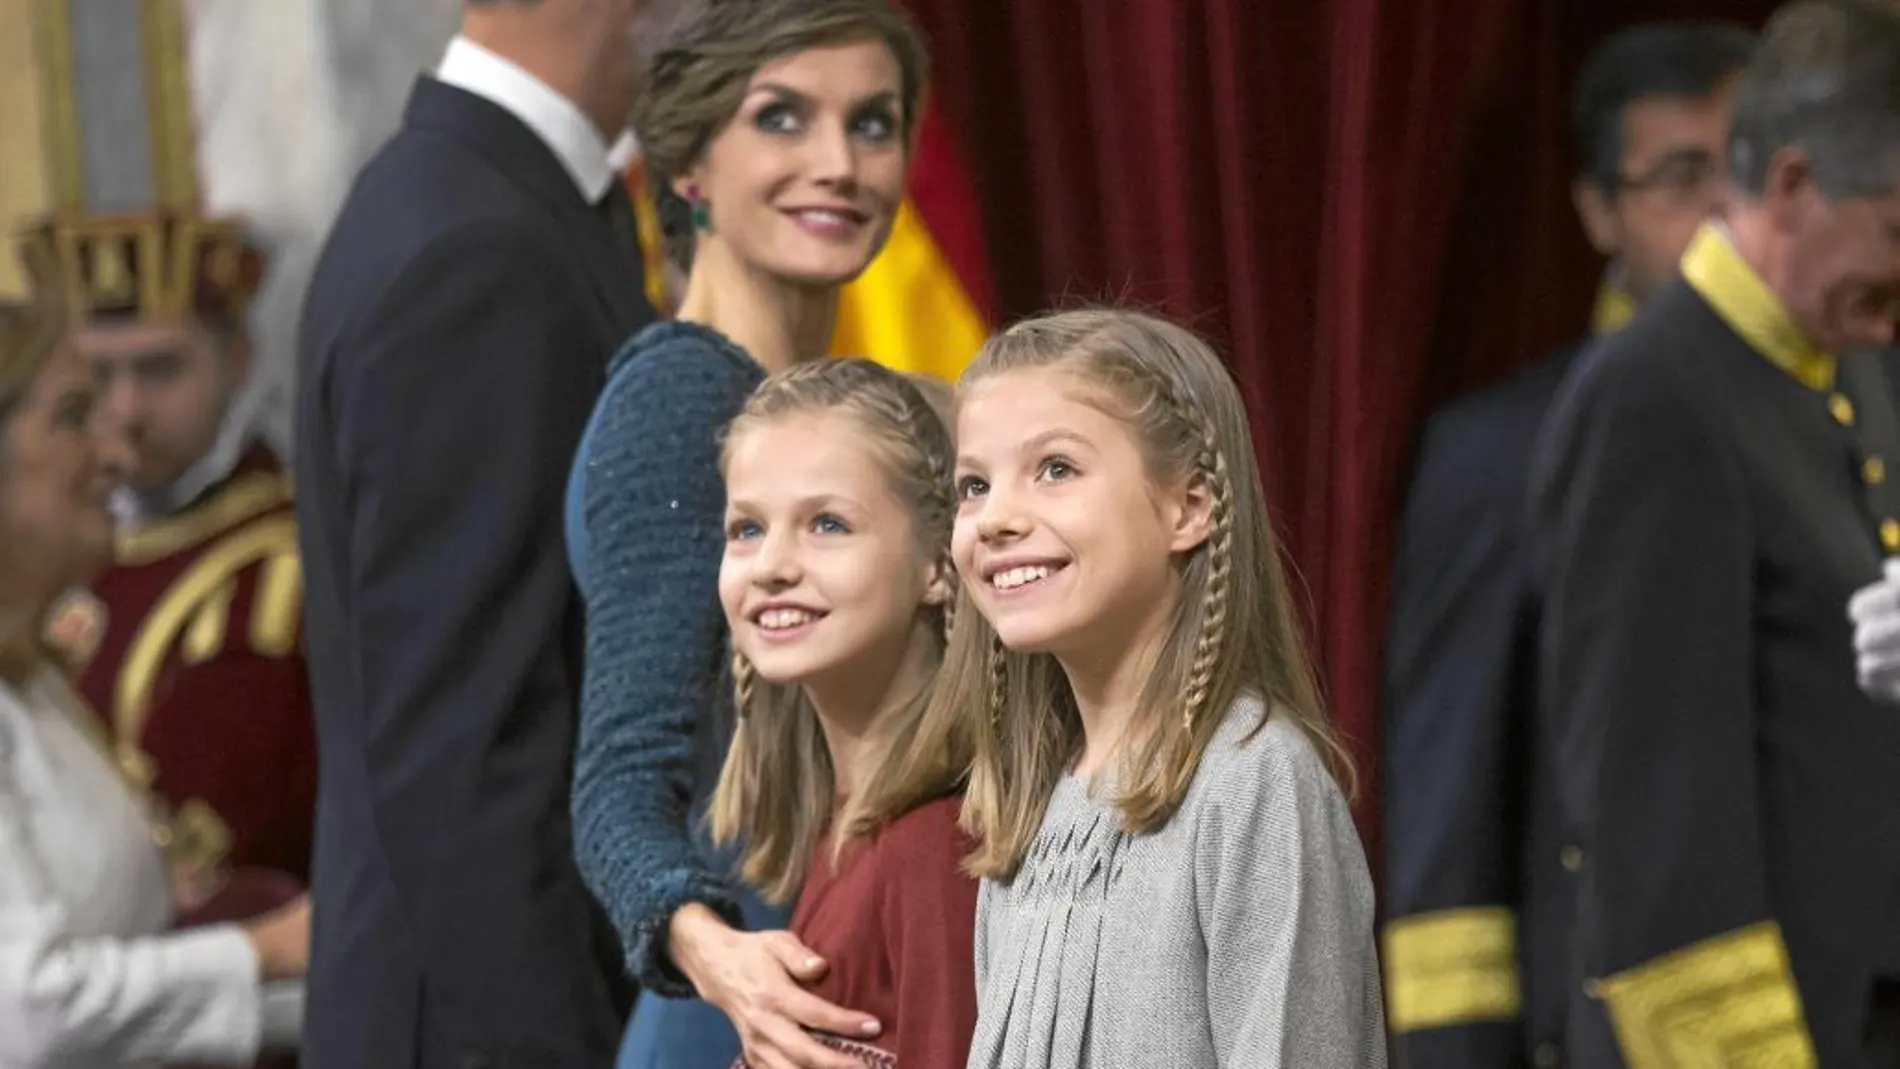 La Reina Letizia, junto a la Princesa Leonor y la Infanta Sofía, en el acto de apertura de las Cortes Generales